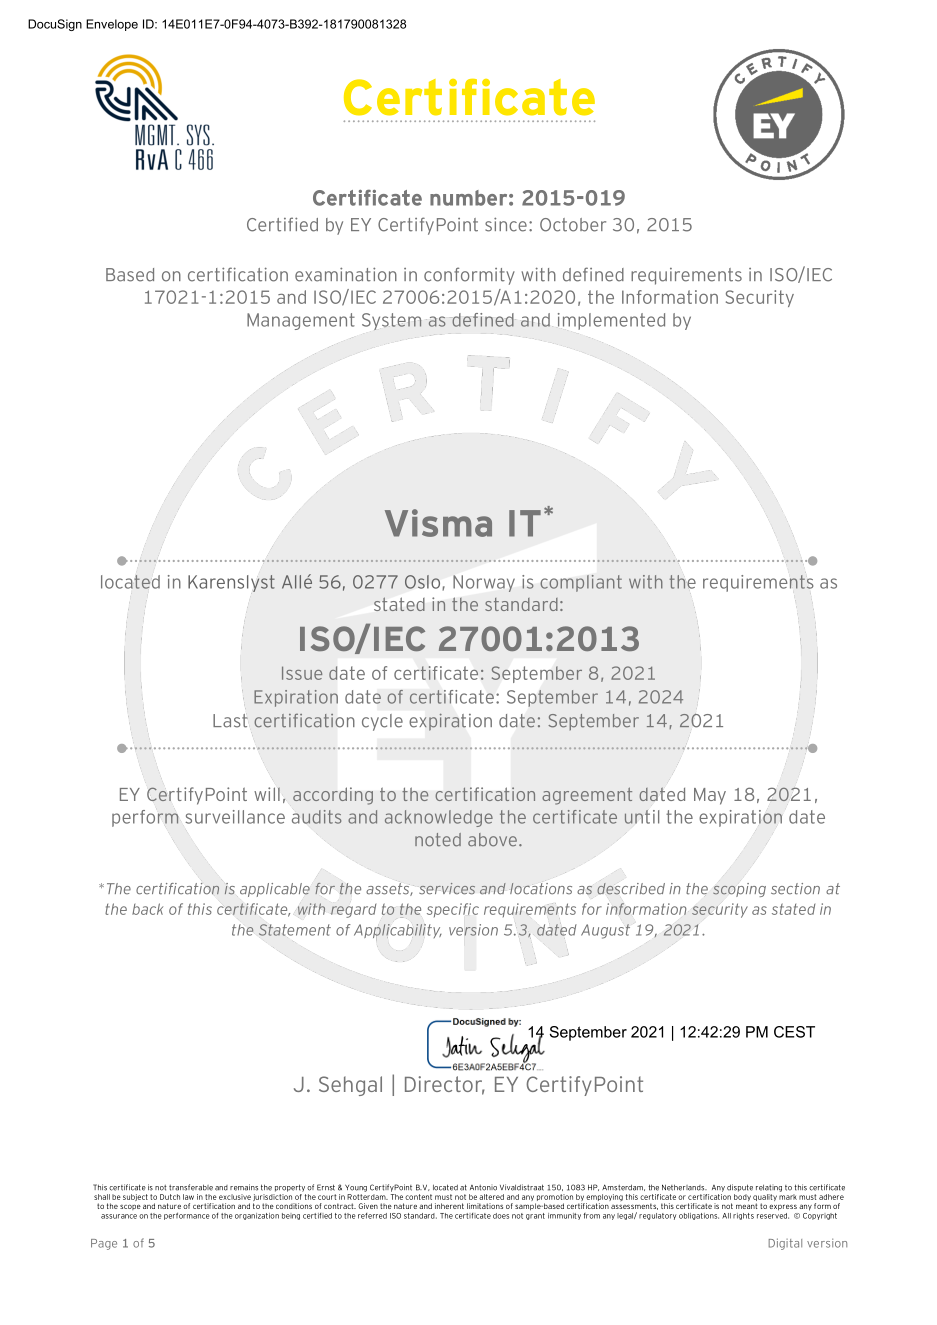 A screenshot of the 27001 certificate.